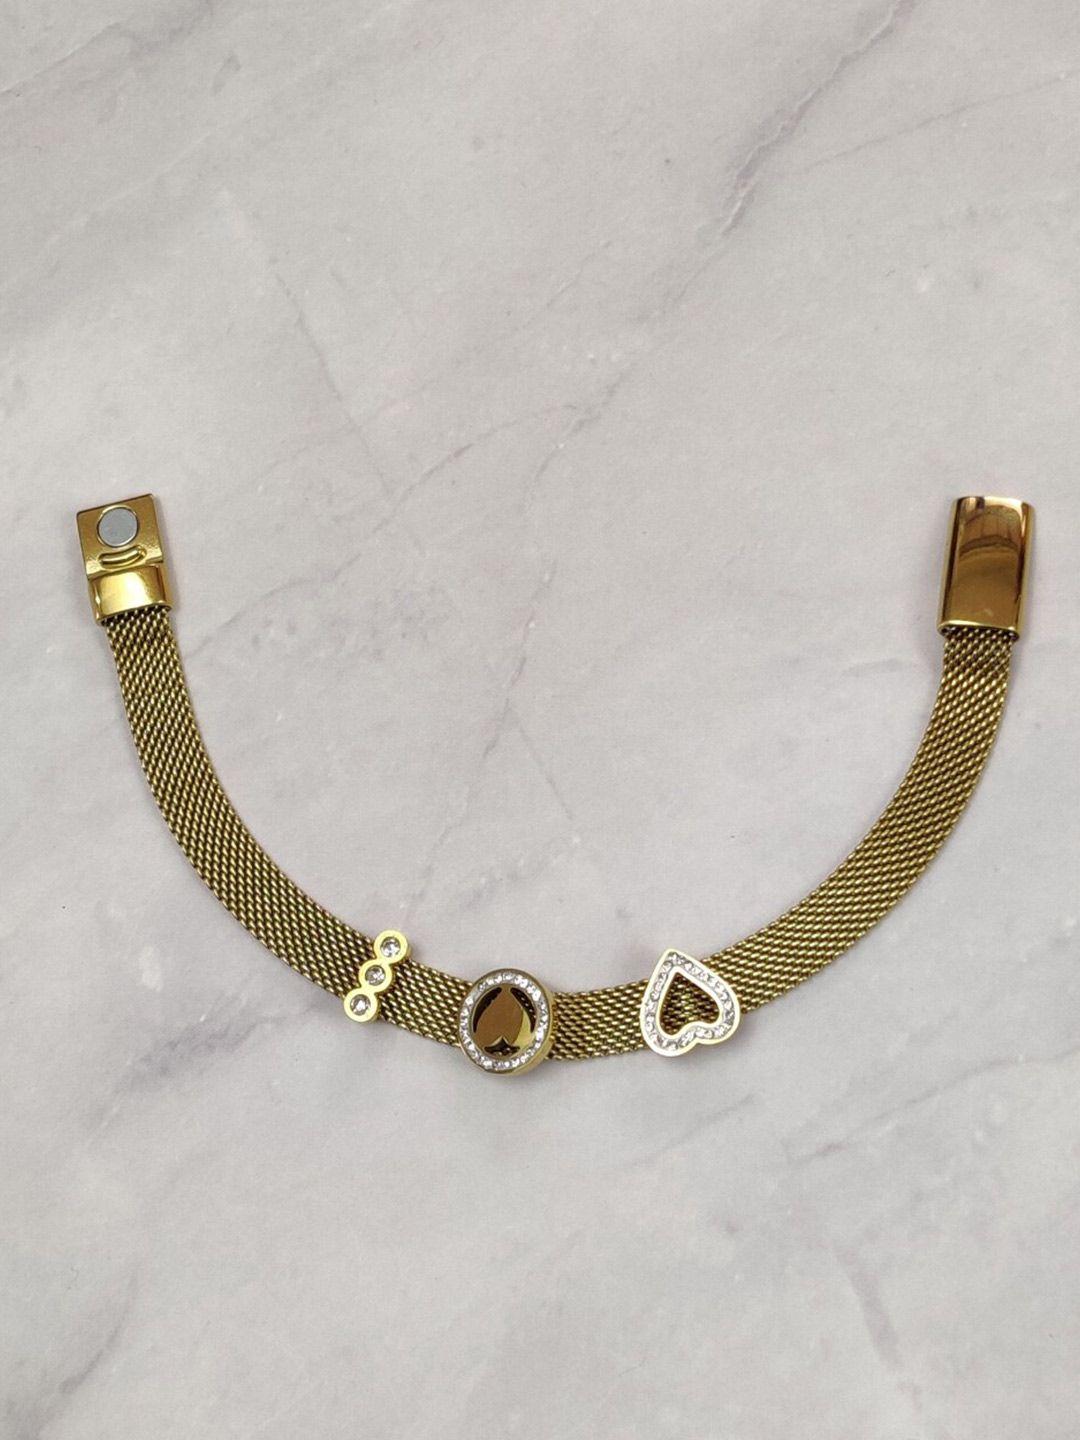 el regalo women gold-toned cuff bracelet